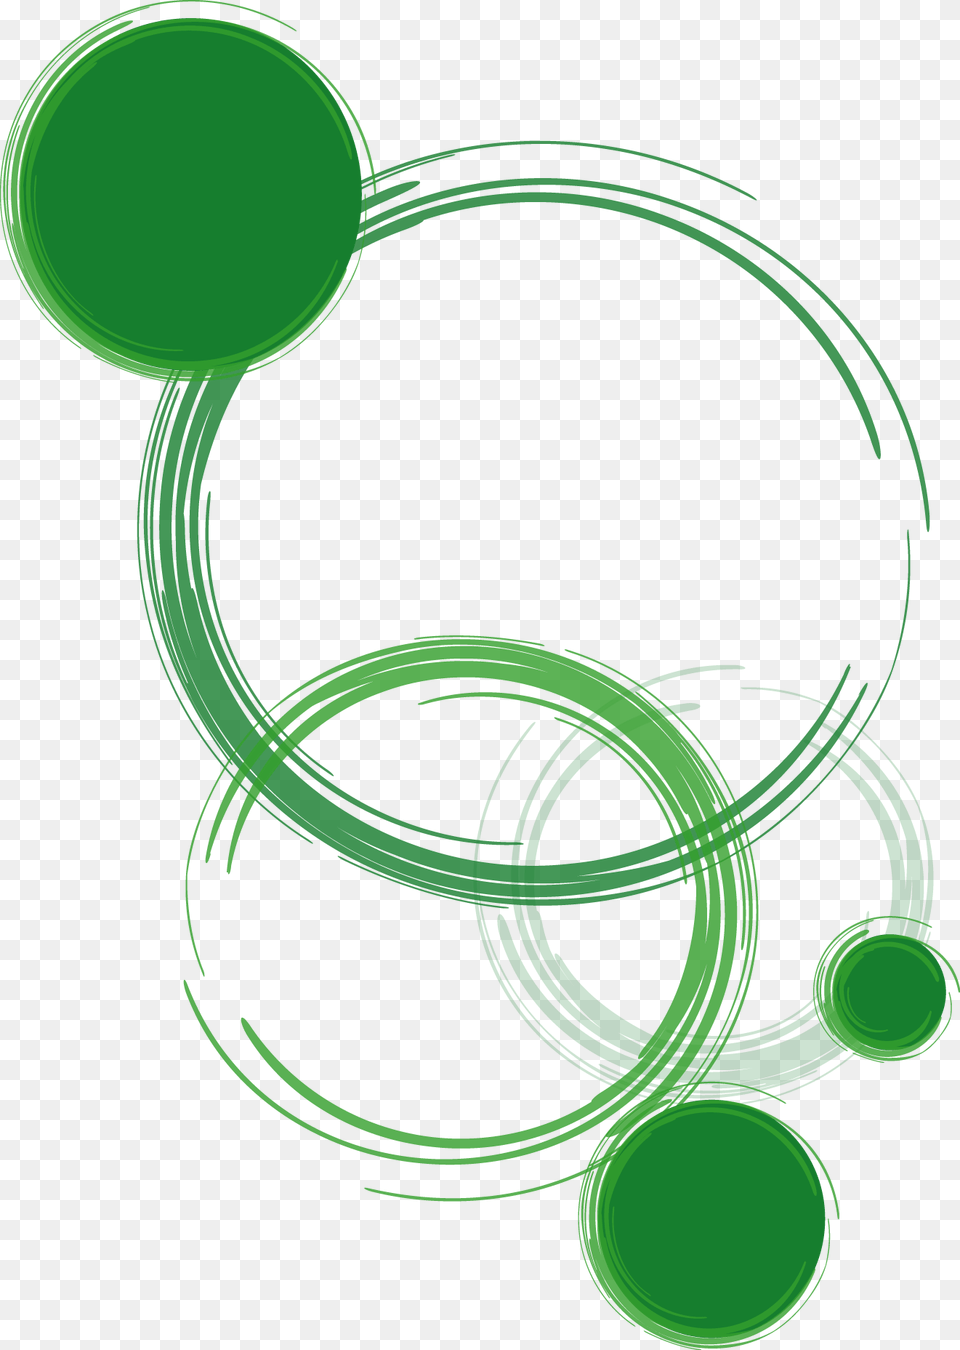 Clip Art, Coil, Green, Spiral, Light Free Transparent Png